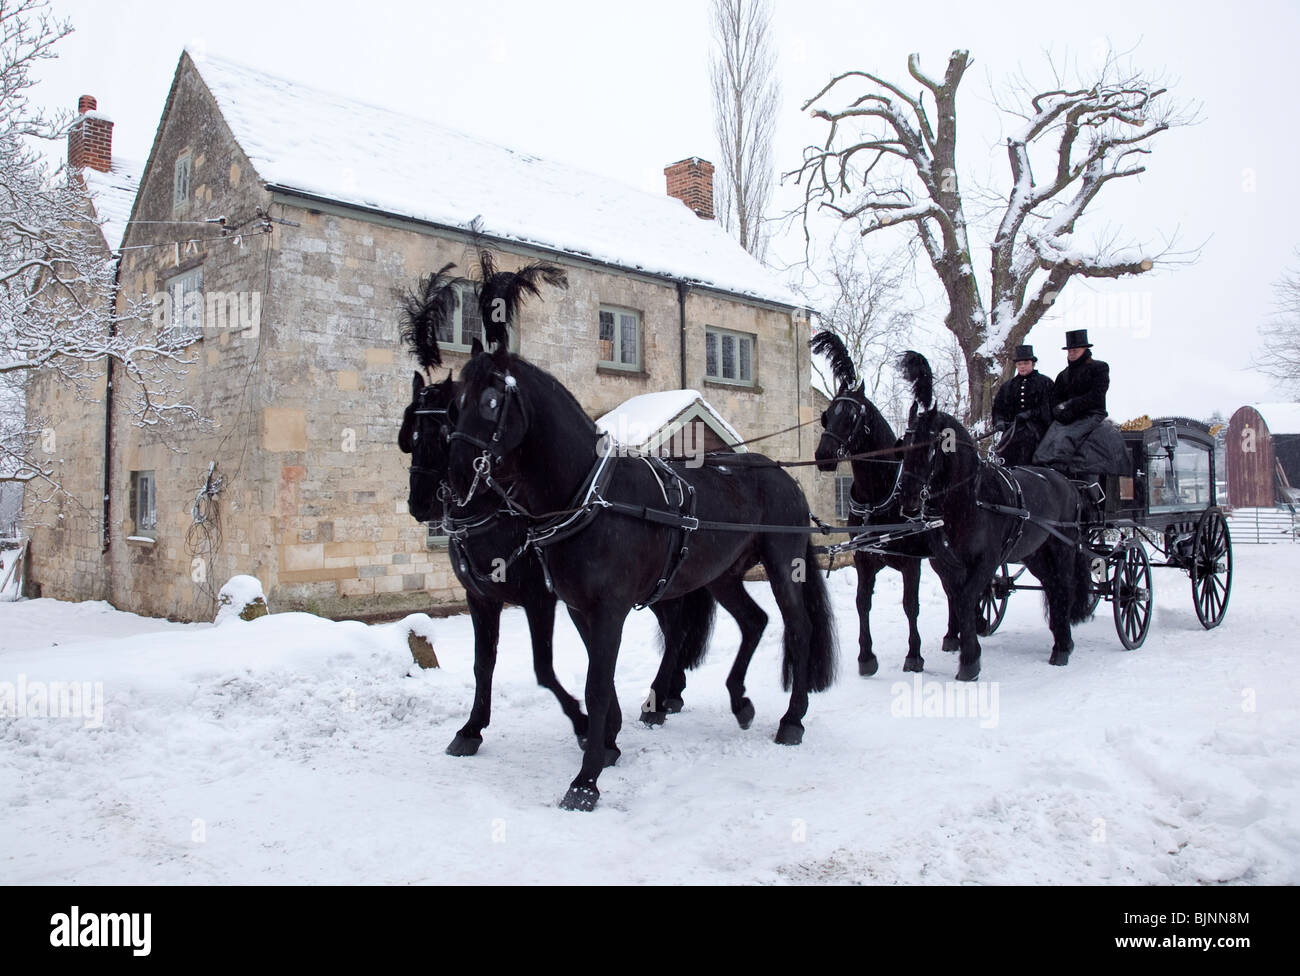 Vieux jeu traditionnel cheval transport funéraire en neige avec quatre chevaux prêts à partir pour l'église Banque D'Images